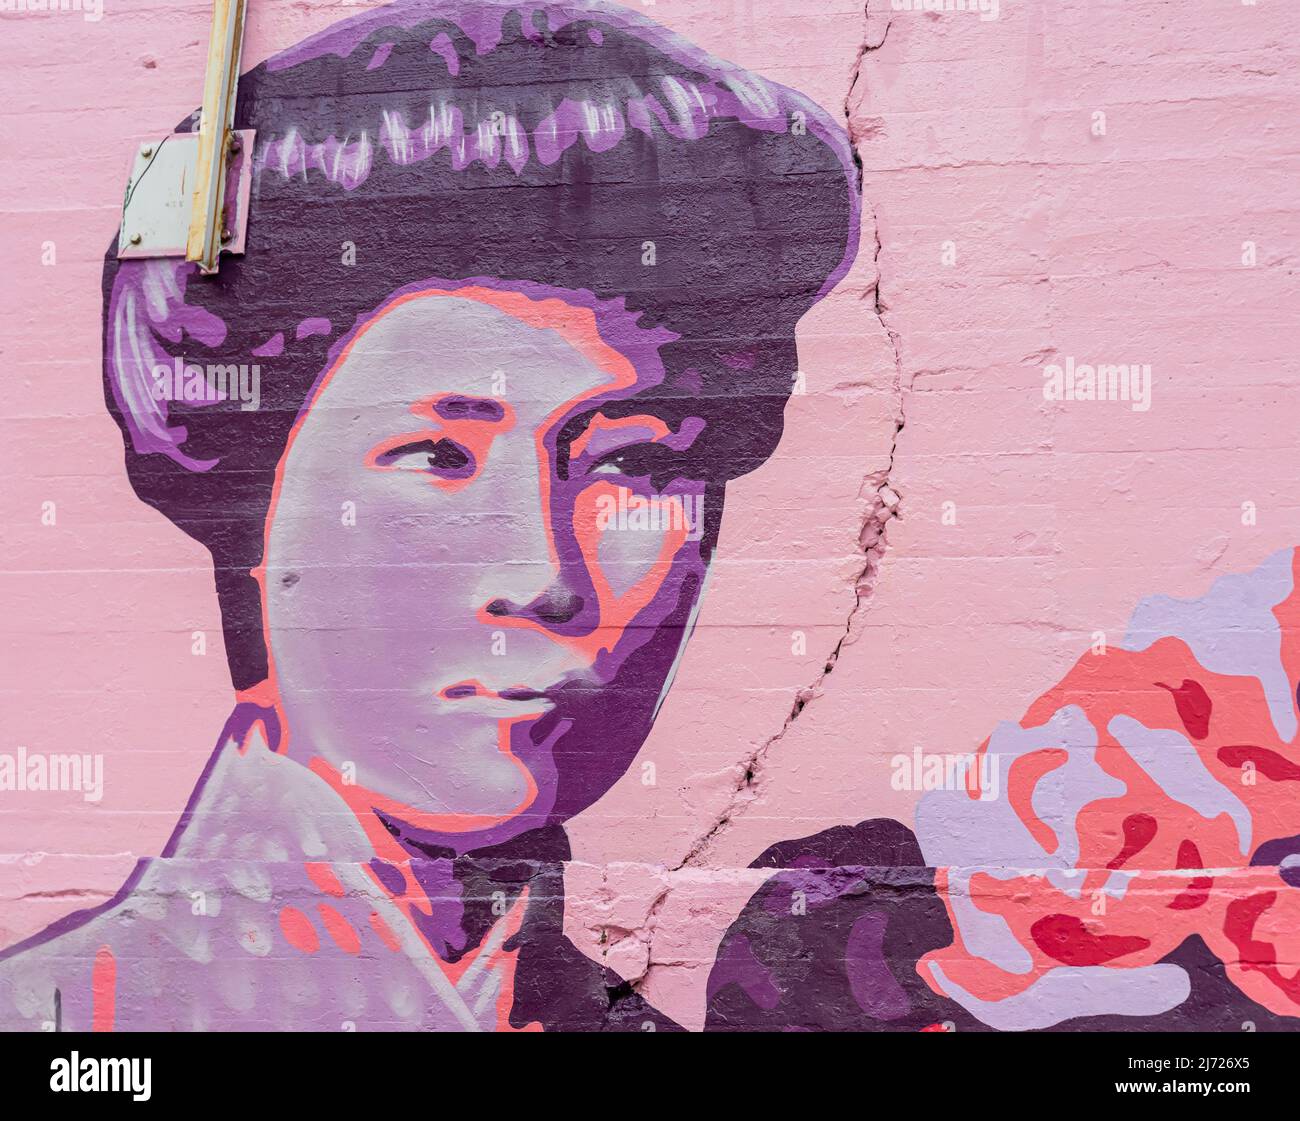 Wandbild des japanischen Journalisten Kanno Sugako, Concepcion Feministische Wandbild La Unión hace la fuerza, an der Wand in, Madrid Spanien Stockfoto